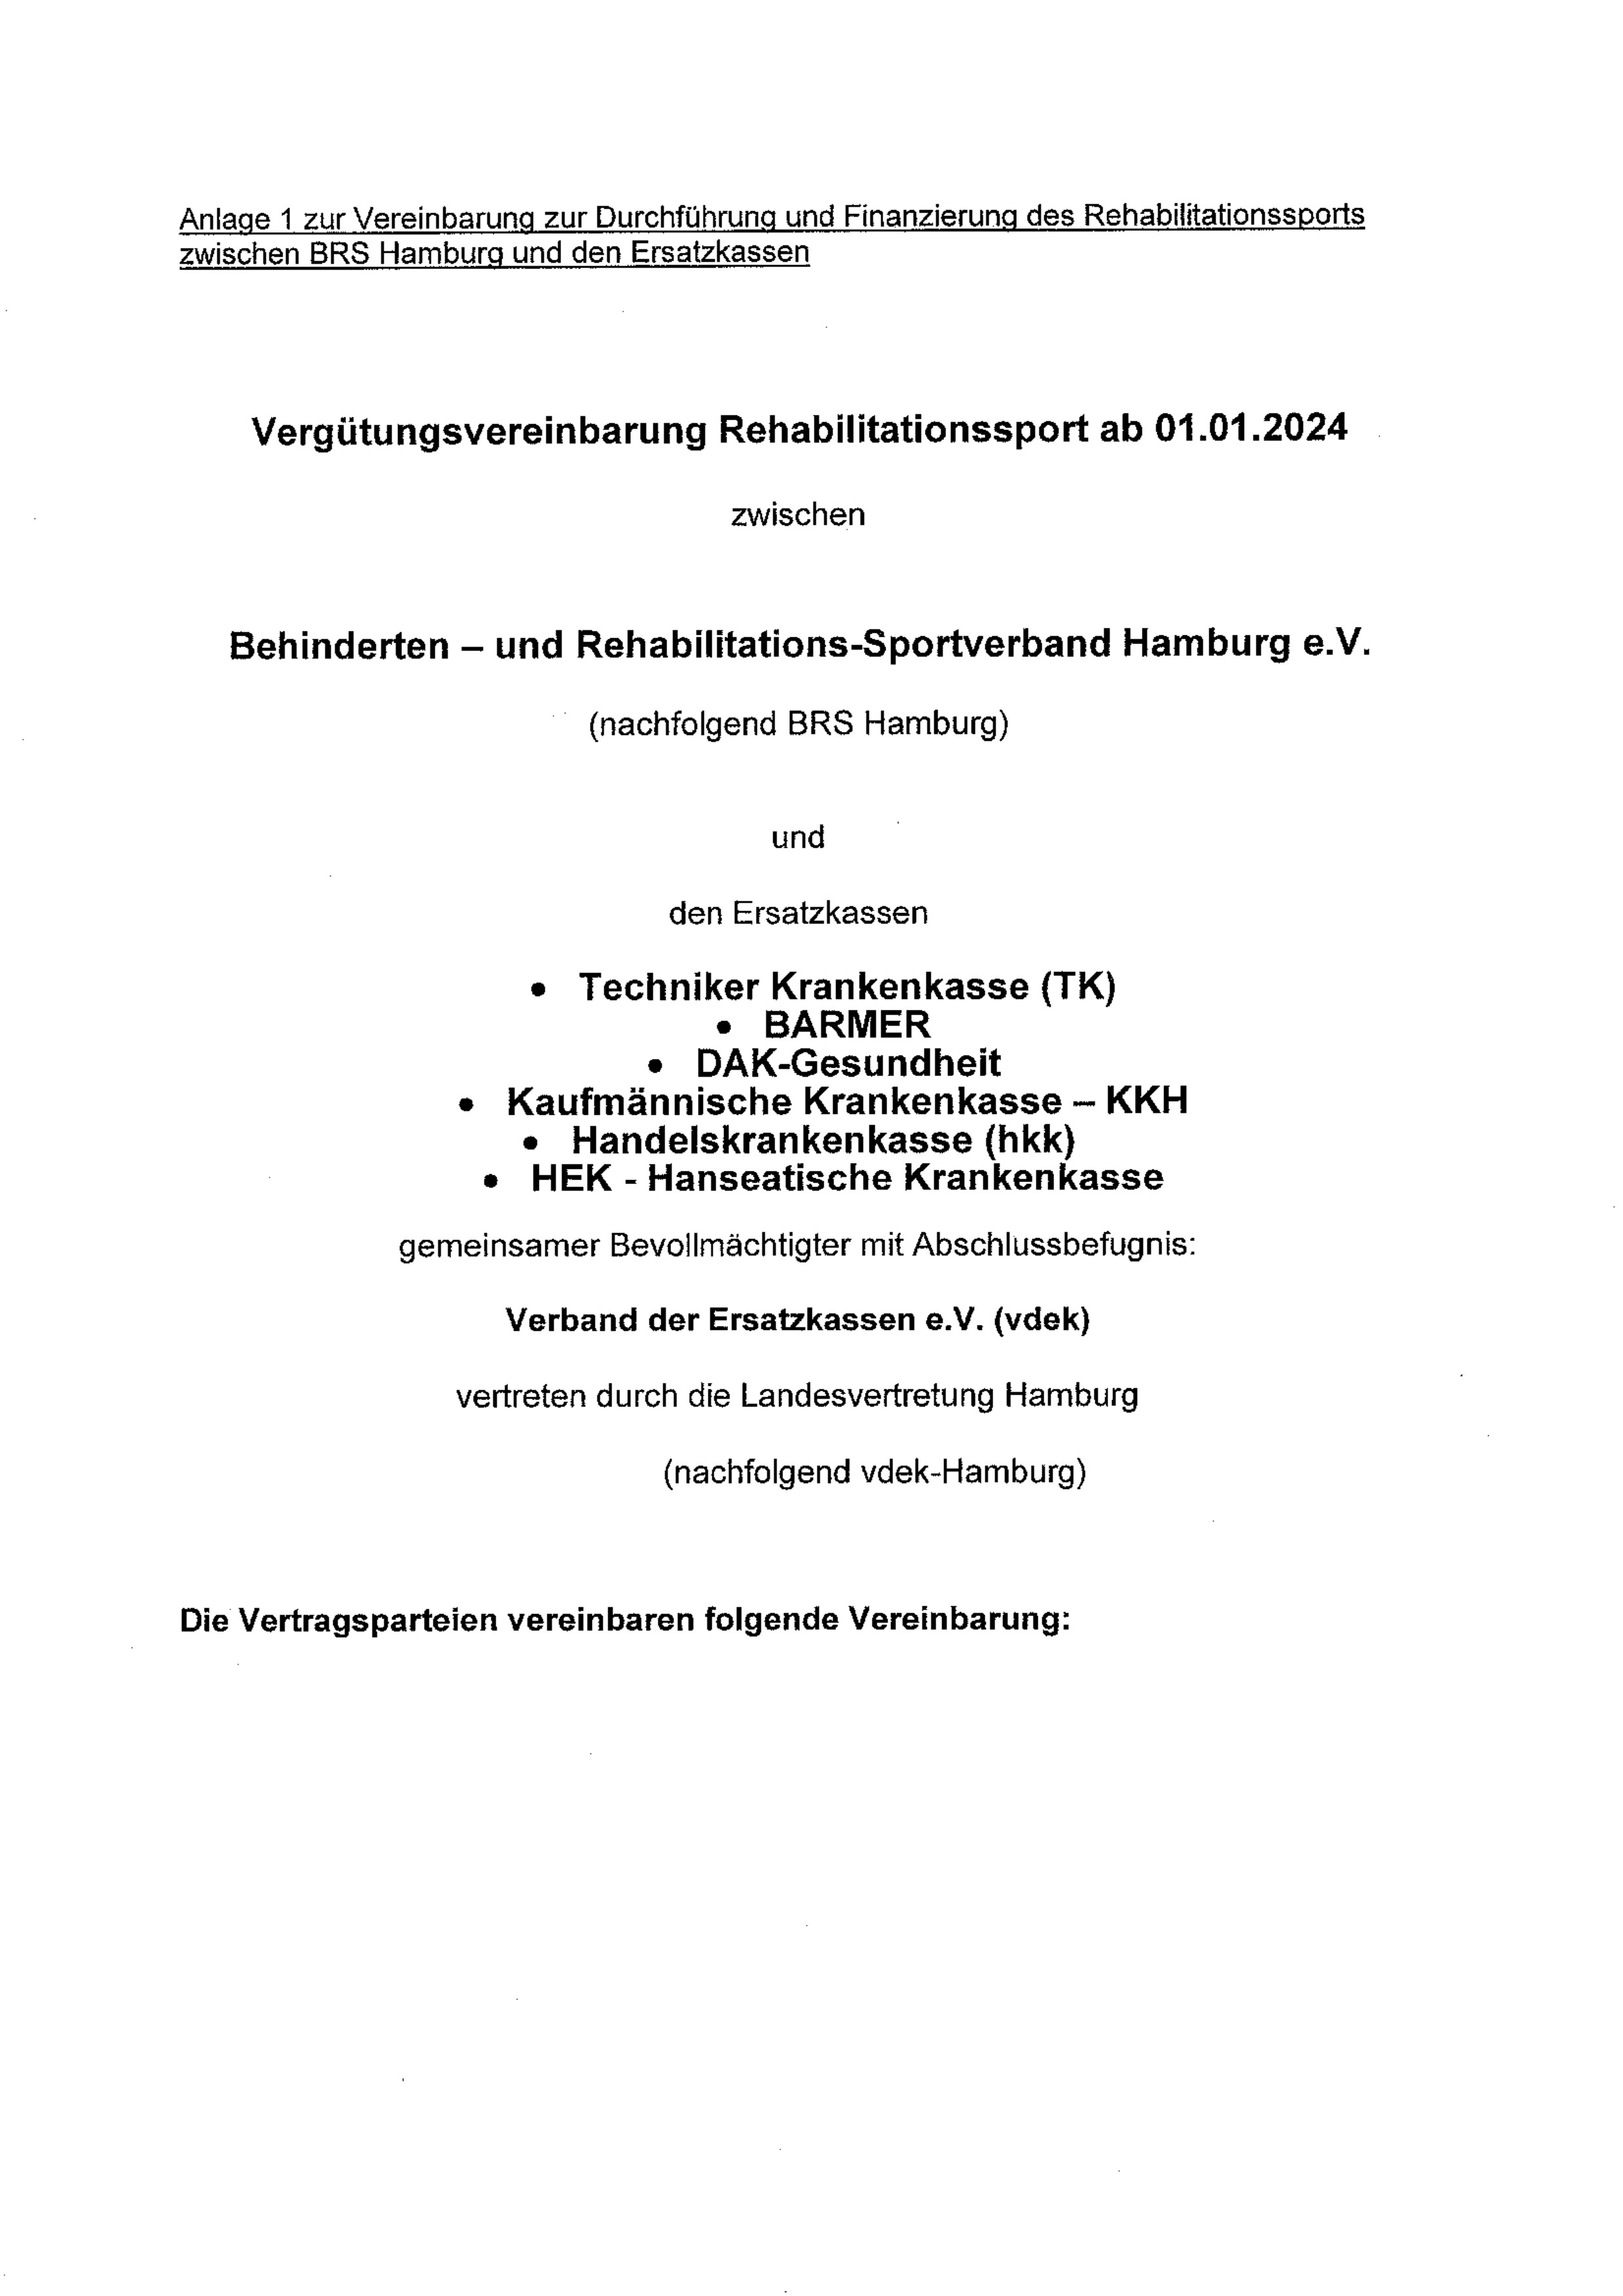 Erste Seite der PDF-Datei: Vergütungsvereinbarung vdek-Hamburg 2024